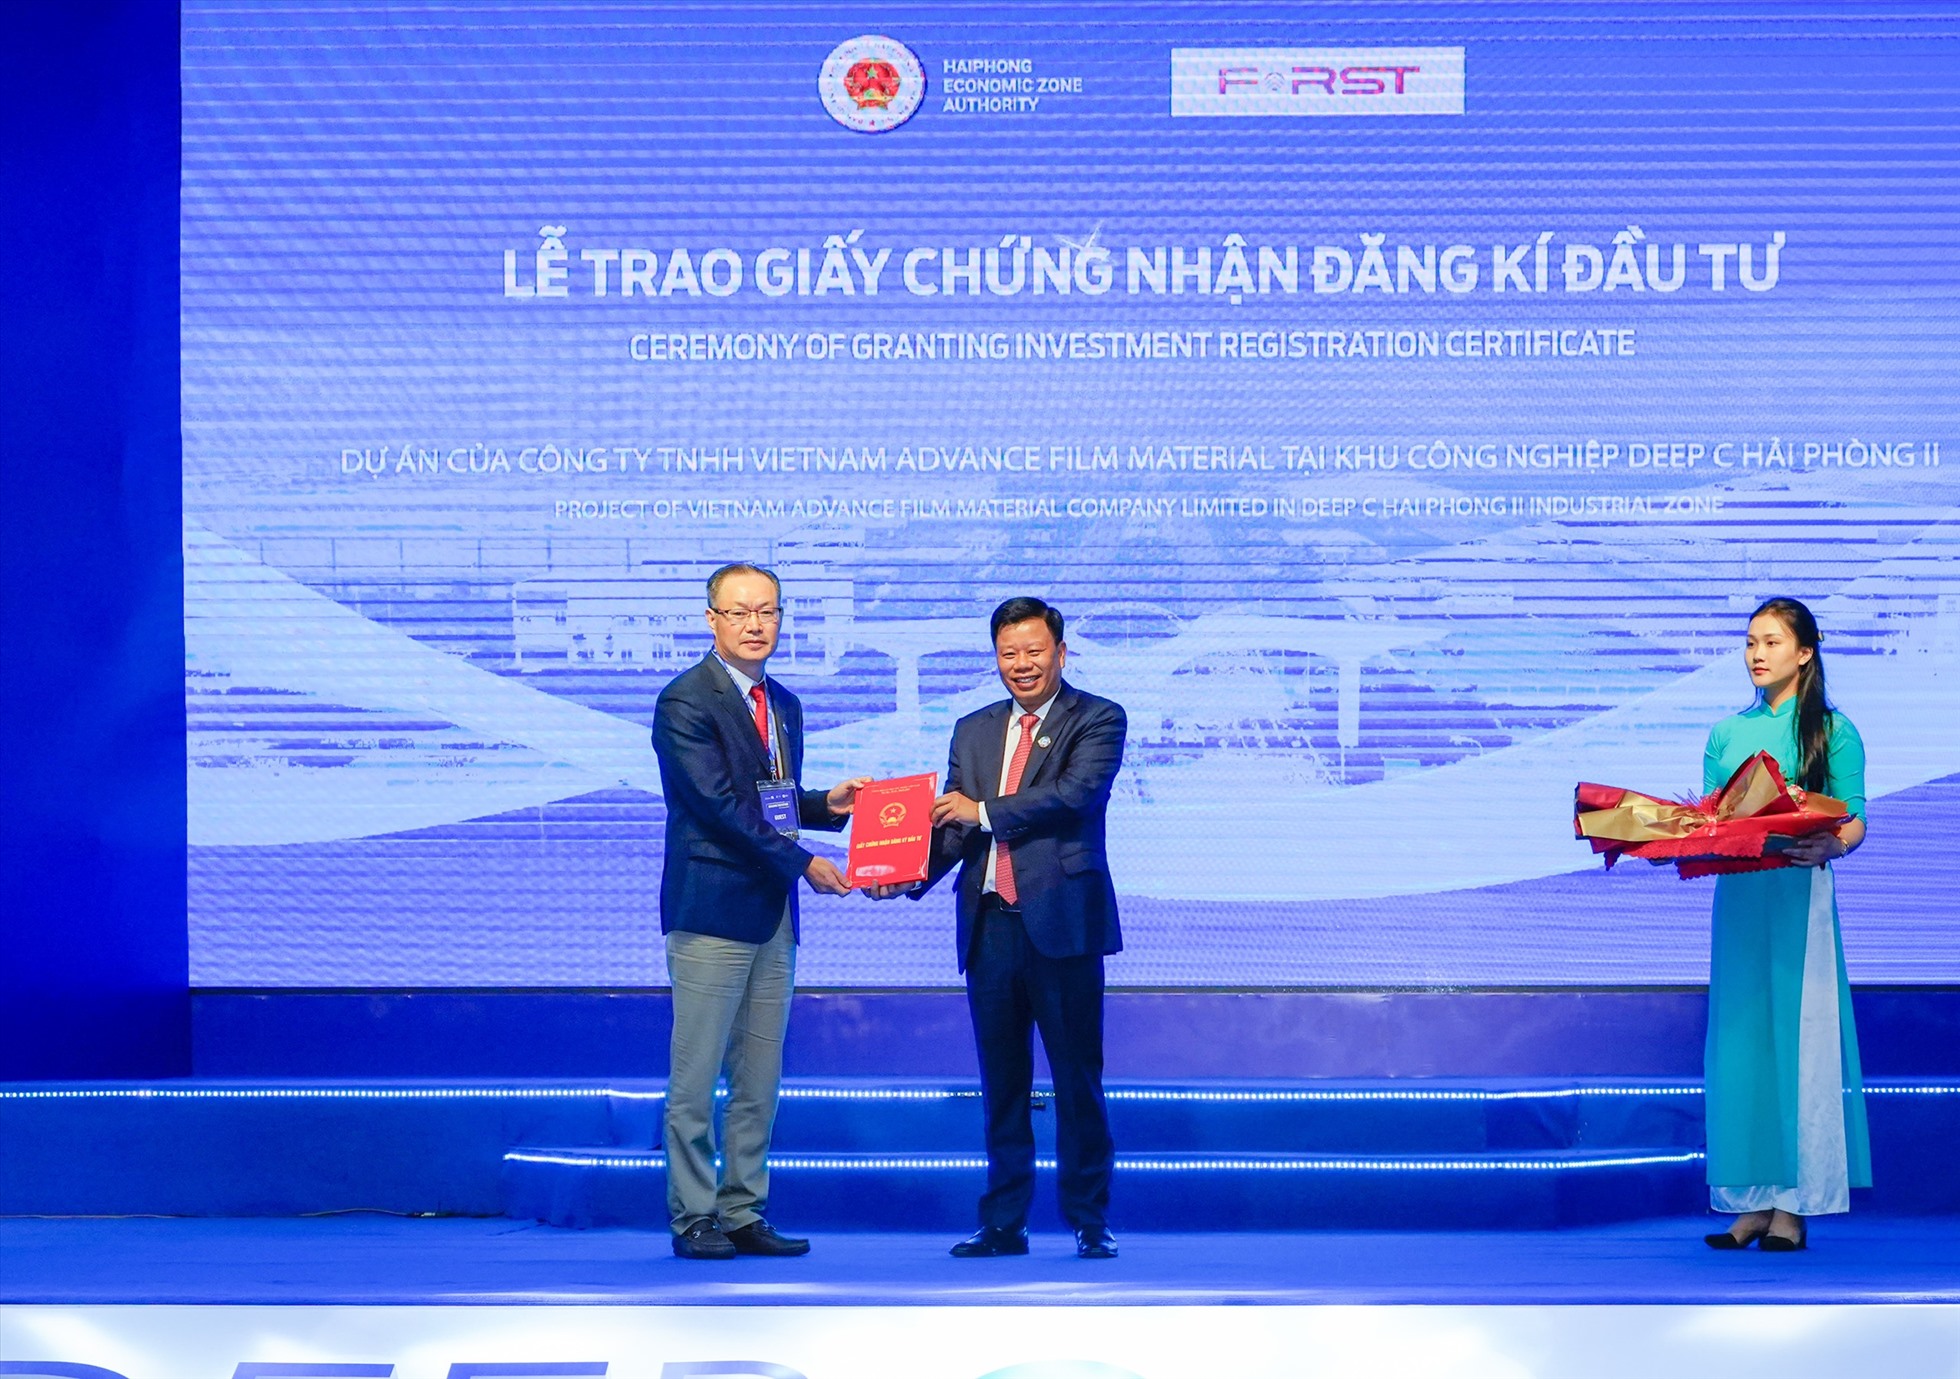 Ông Lê Trung Kiên, Trưởng BQL Khu kinh tế Hải Phòng trao giấy chứng nhận đầu tư trị giá 98 triệu USD cho Công ty TNHH First Global Business tại KCN Deep C Hải Phòng. Ảnh: ĐT